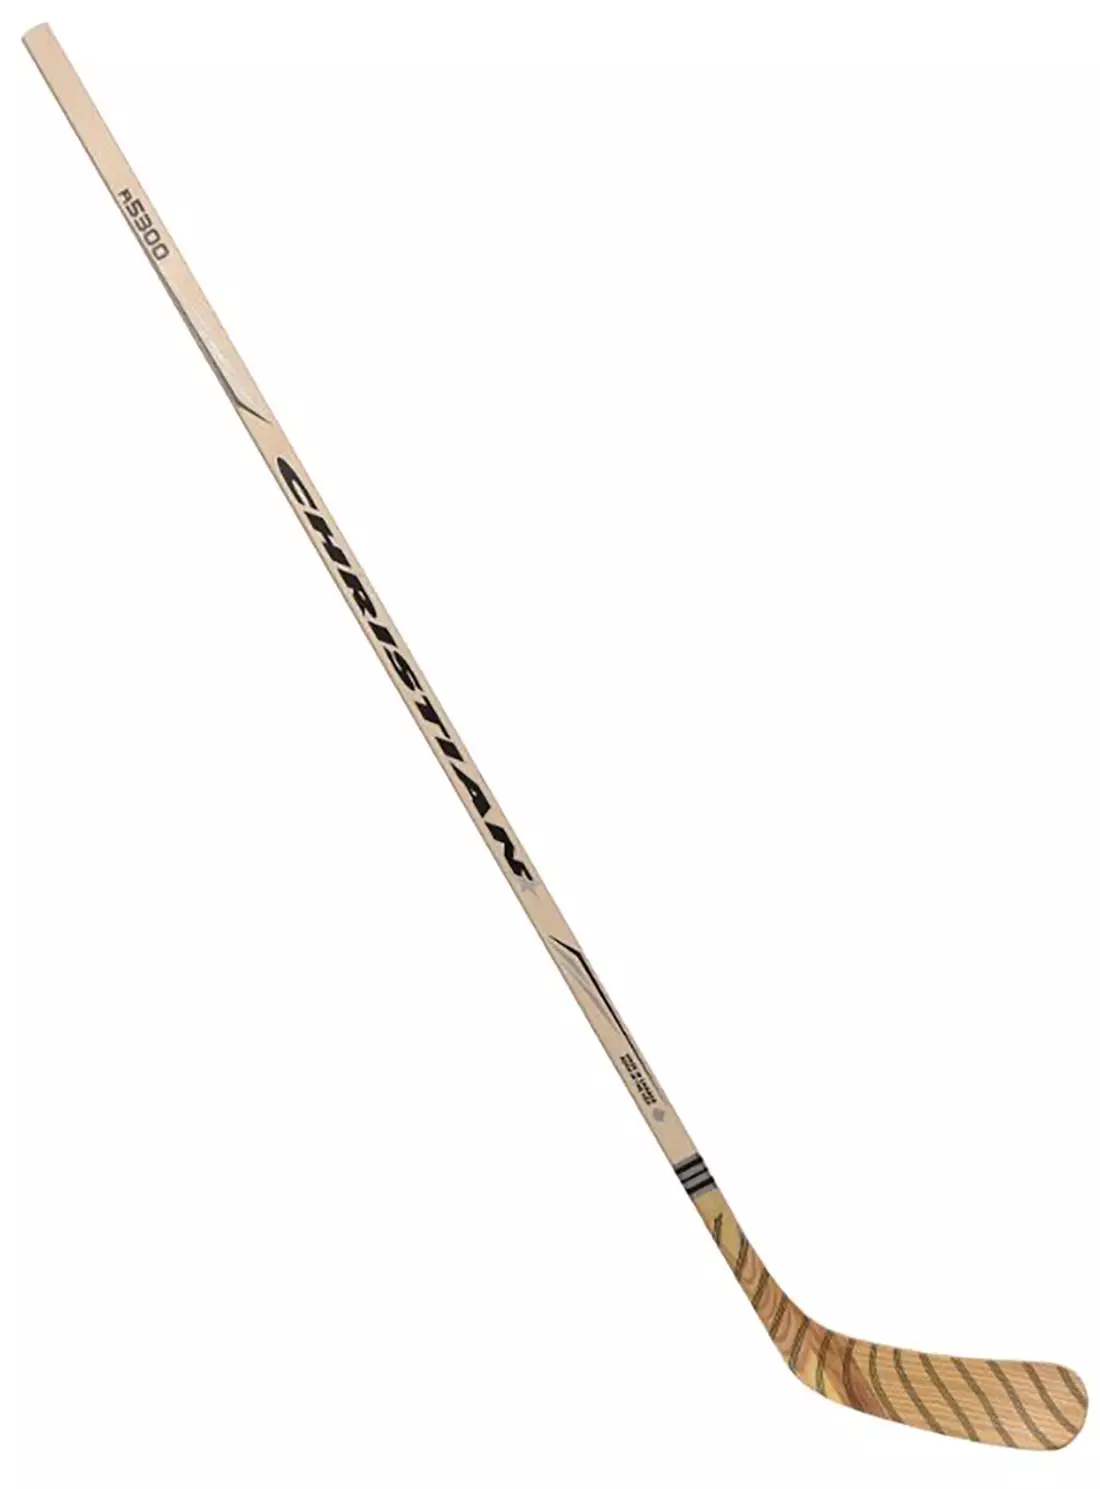 dickssportinggoods.com | R5300 Senior Hockey Stick